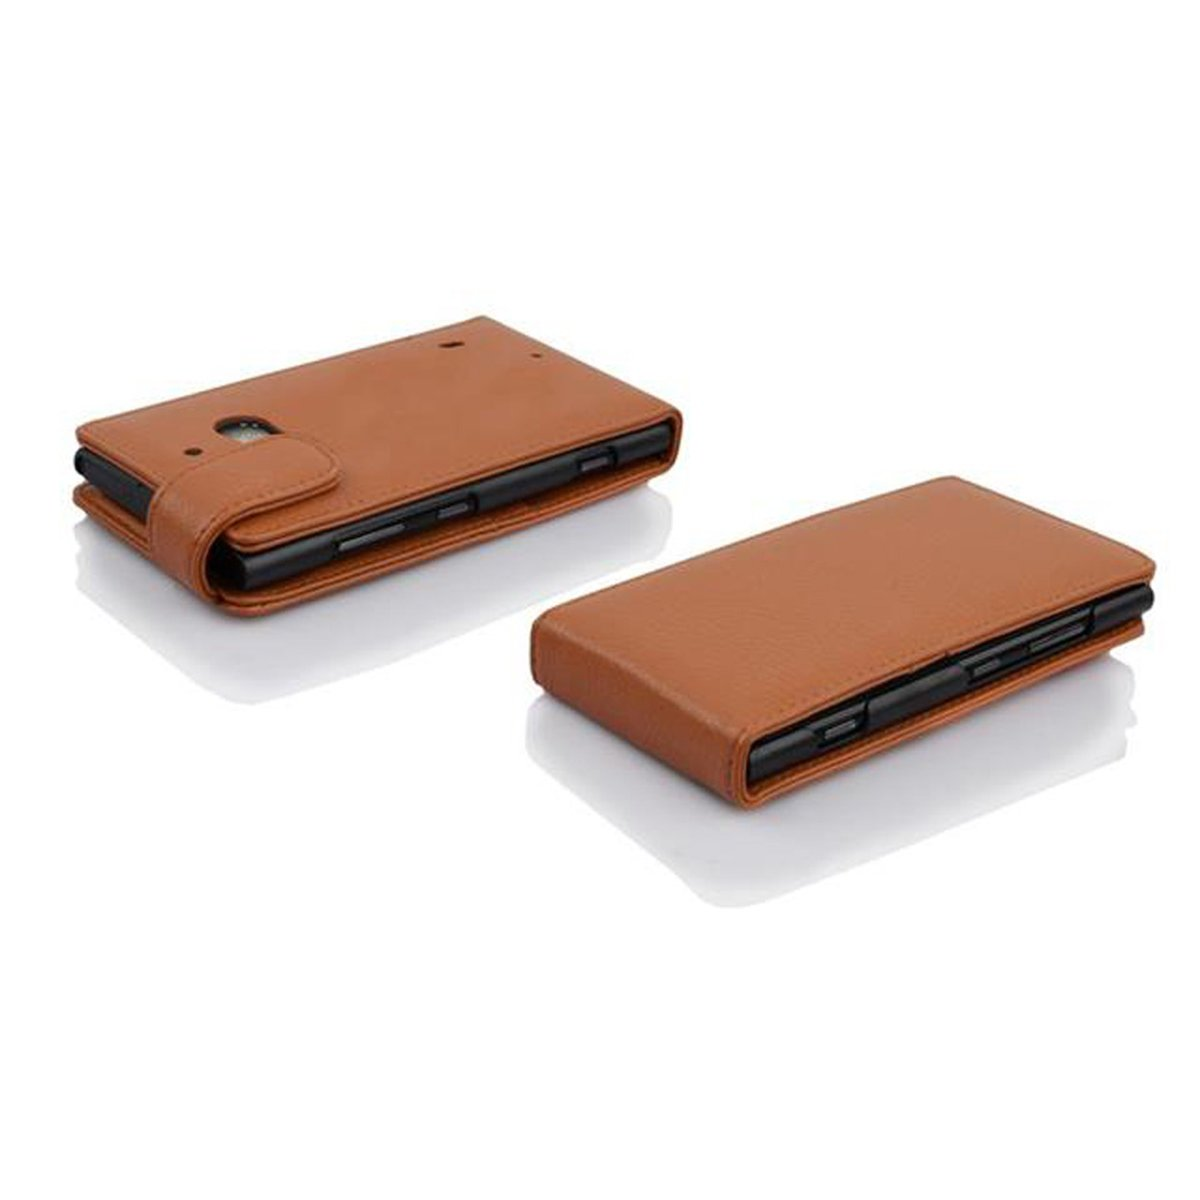 CADORABO Schutzhülle im 929 Style, / Flip Lumia Cover, 930, BRAUN Flip Nokia, COGNAC